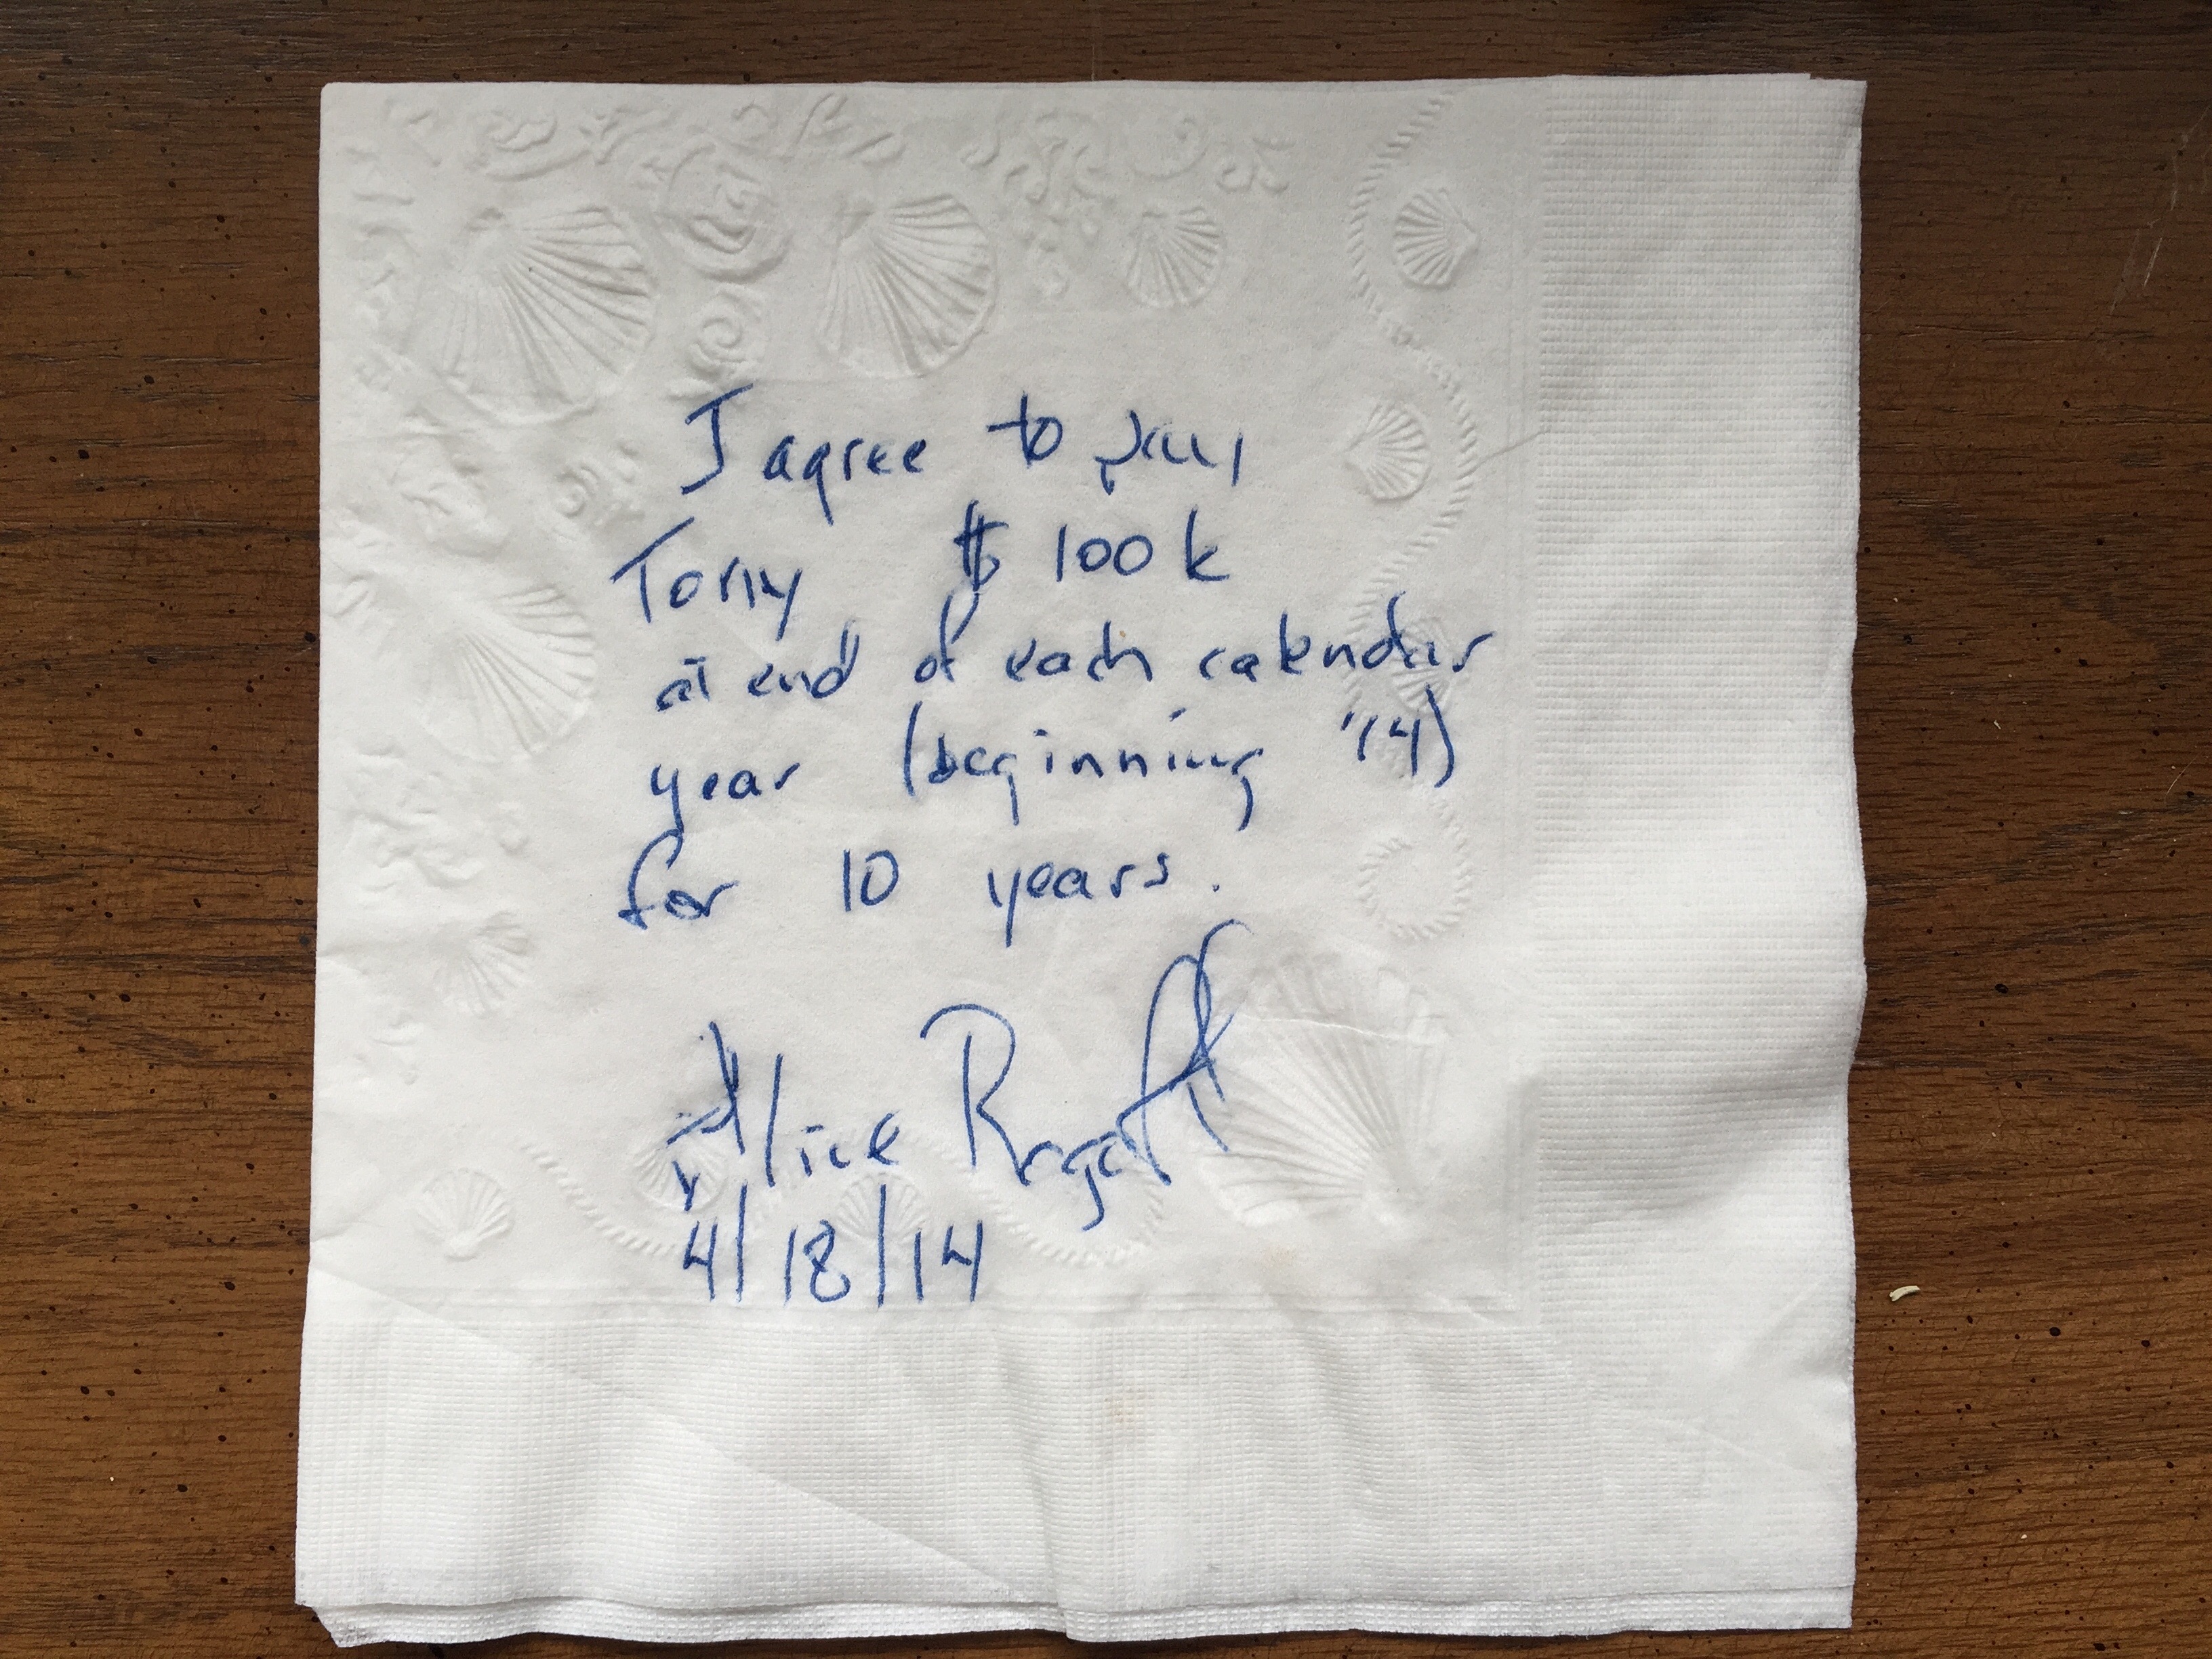 A copy of the napkin signed by Rogoff, courtesy of Tony Hopfinger.